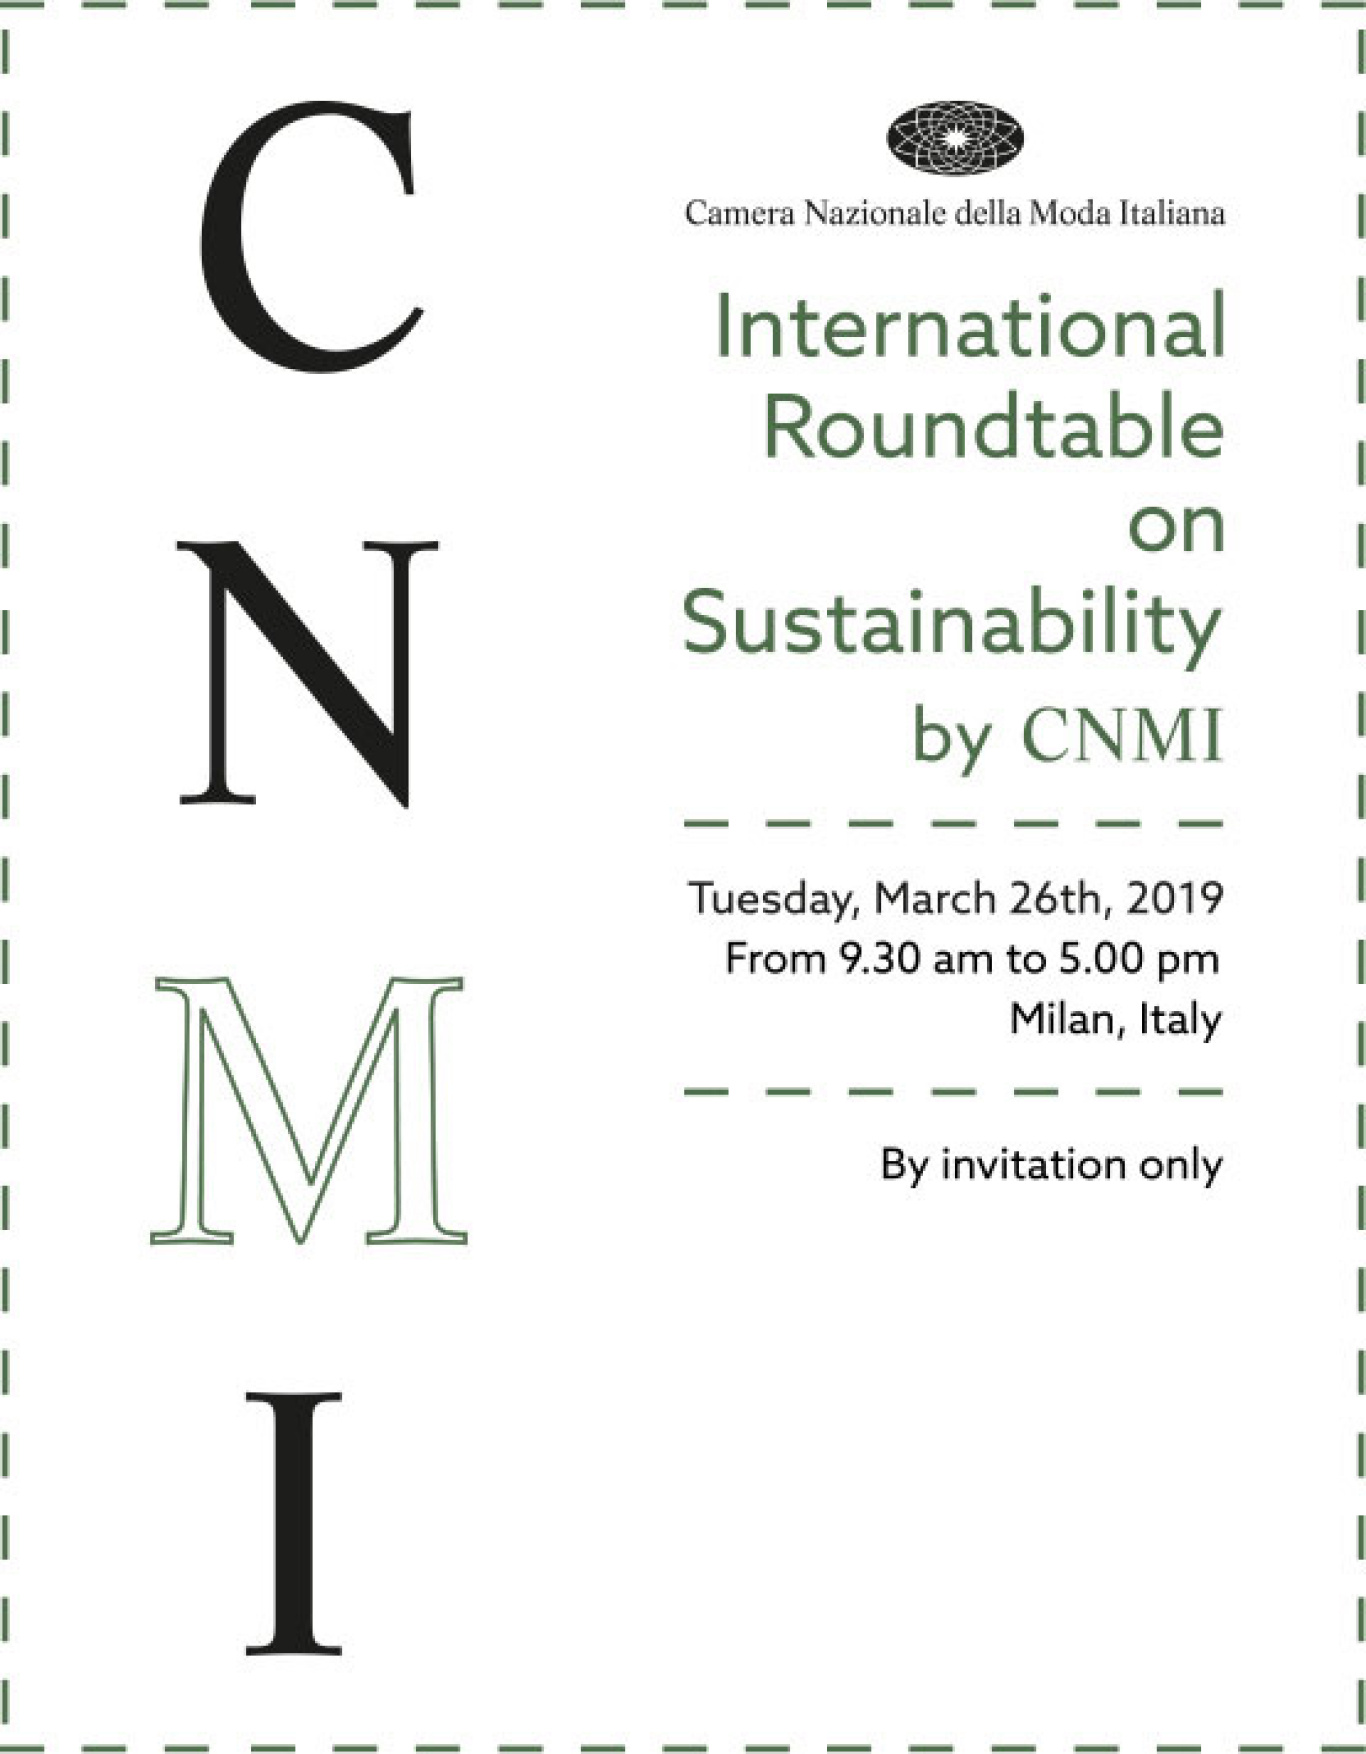 International Roundtable on Sustainability 2019